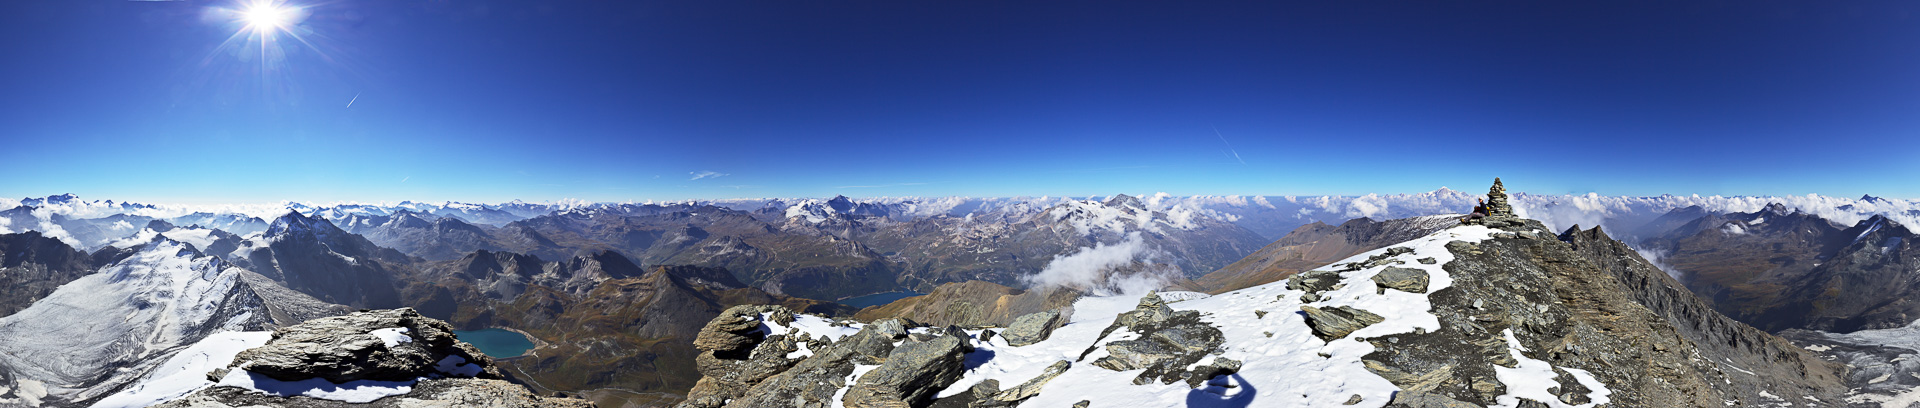 Gipfelpanorama mit wunderbarem Fernblick zwischen Paradiso und Vanoise.